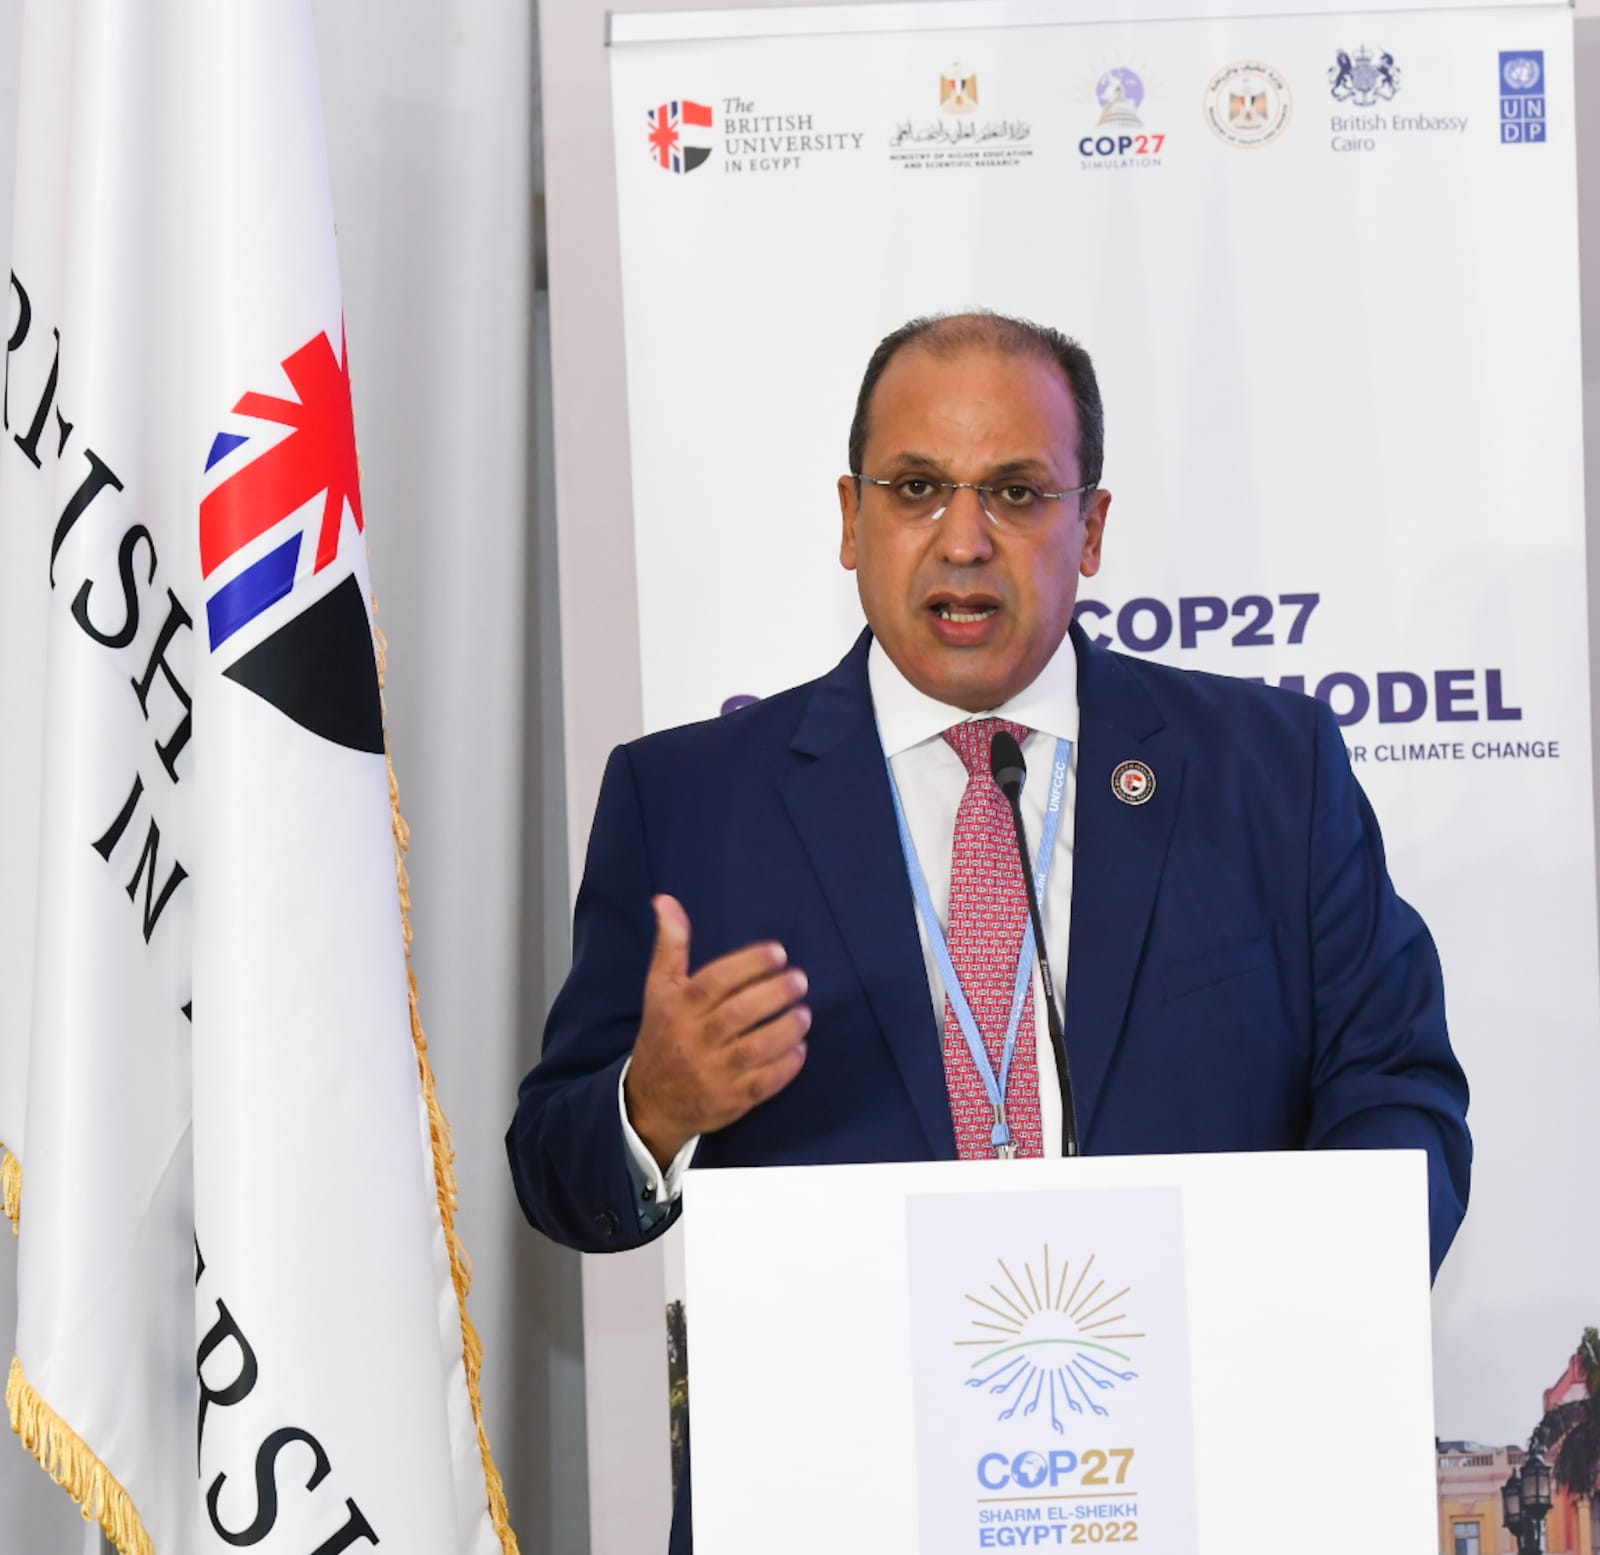 الجامعة البريطانية في مصر تشارك في مؤتمر قمة المناخ COP 27 وتعلن 5 توصيات هامة